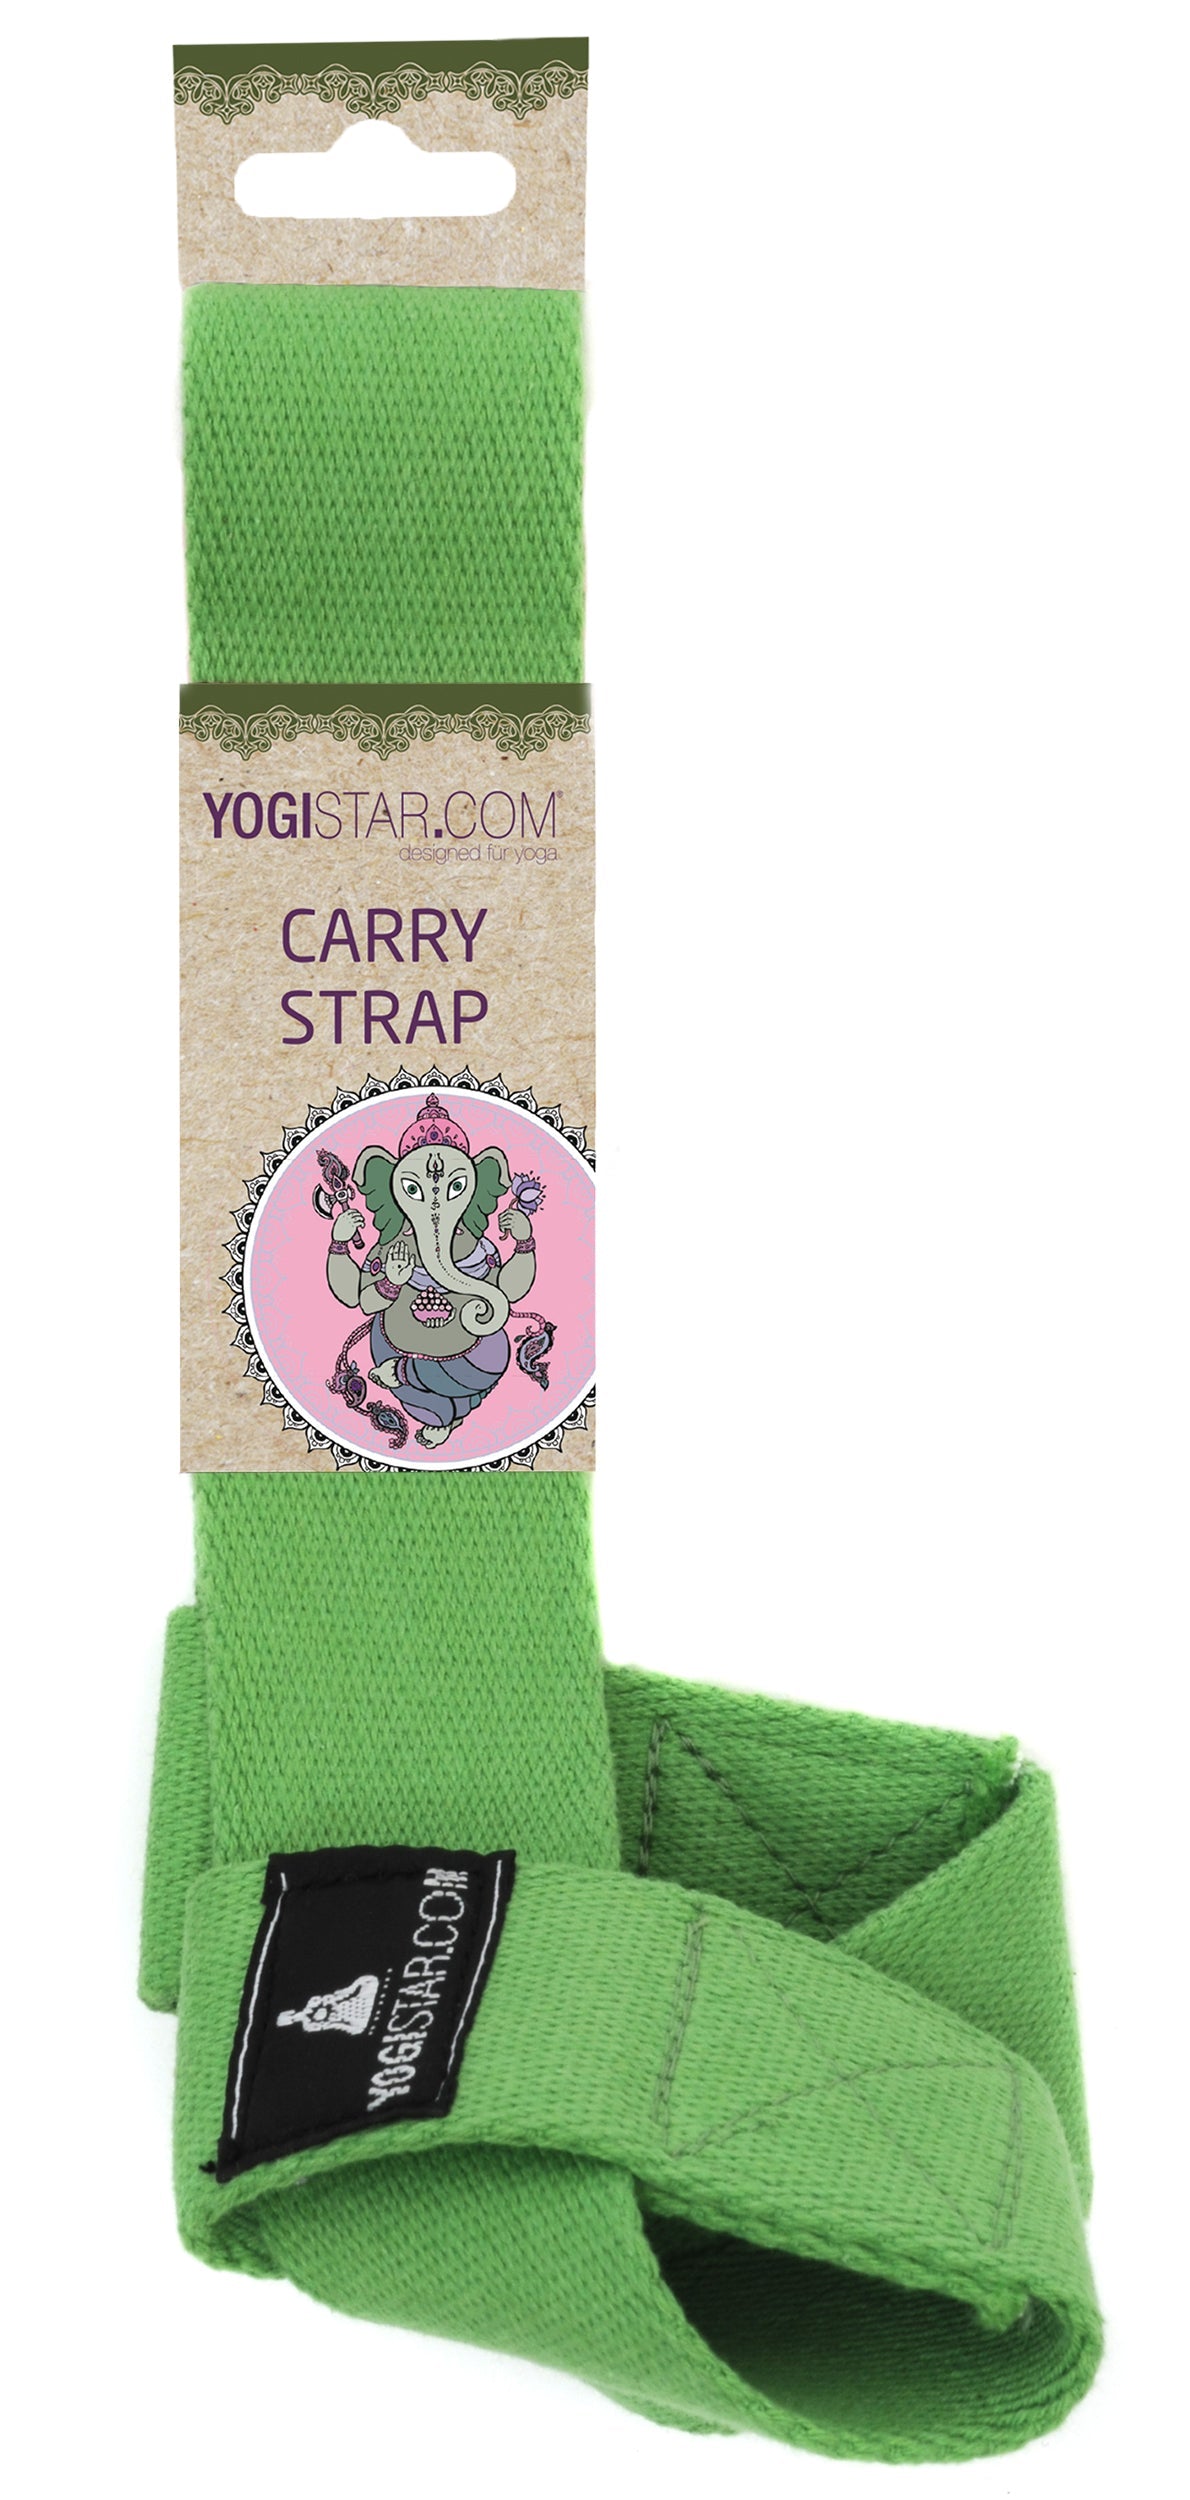 Yogatrageband carry strap - kiwi